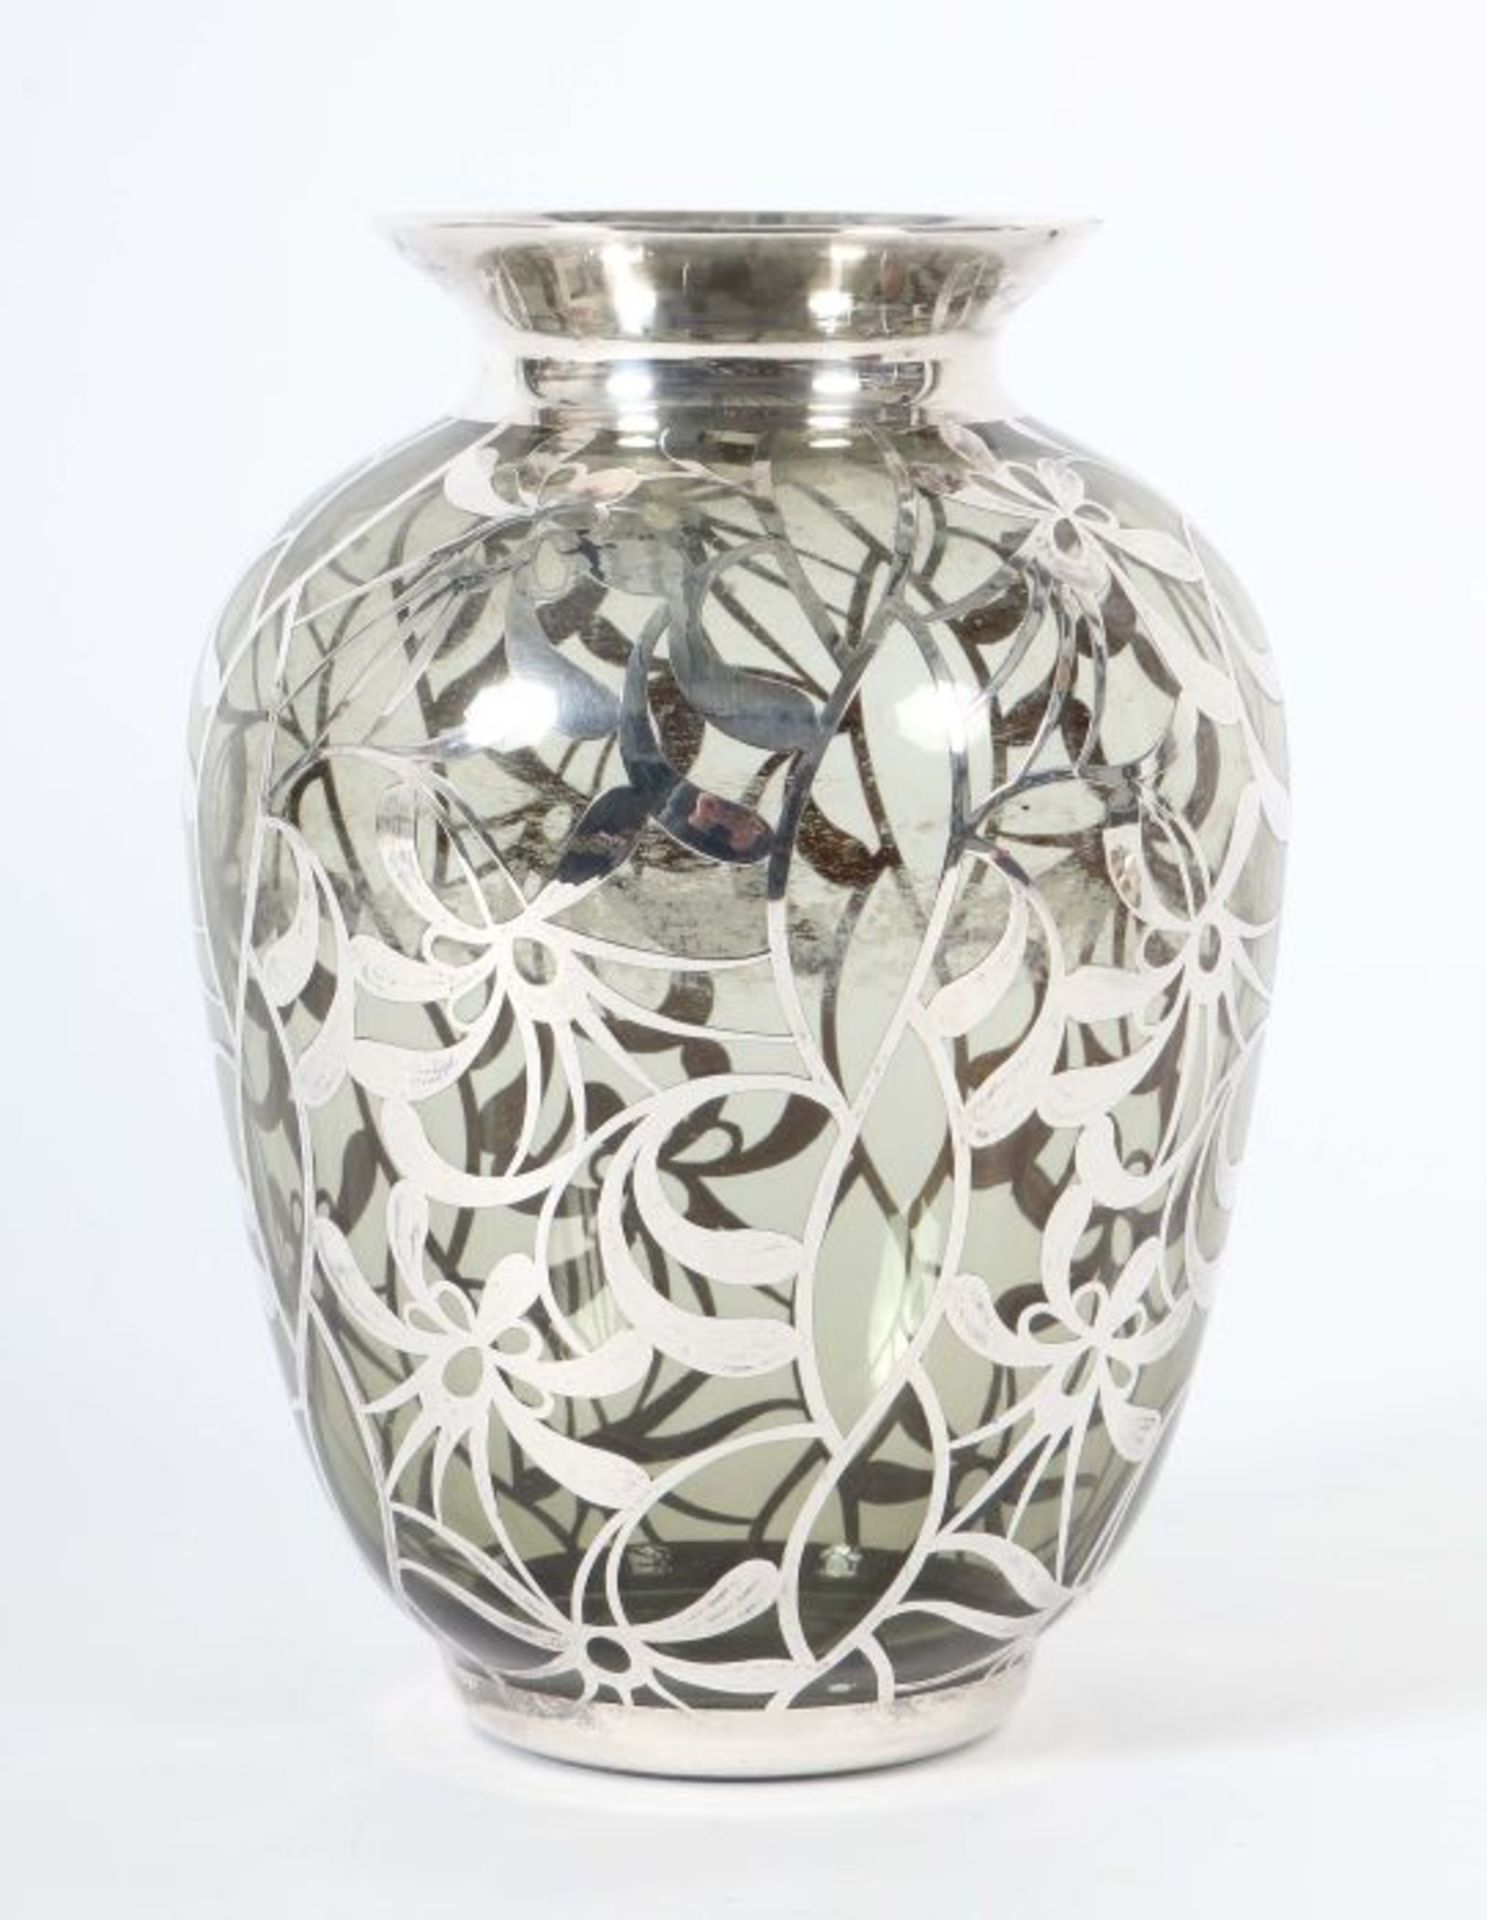 Vase mit Feinsilberdekor Deutschland, 1930/40er Jahre, rauchgraues Glas, dünnwandig,